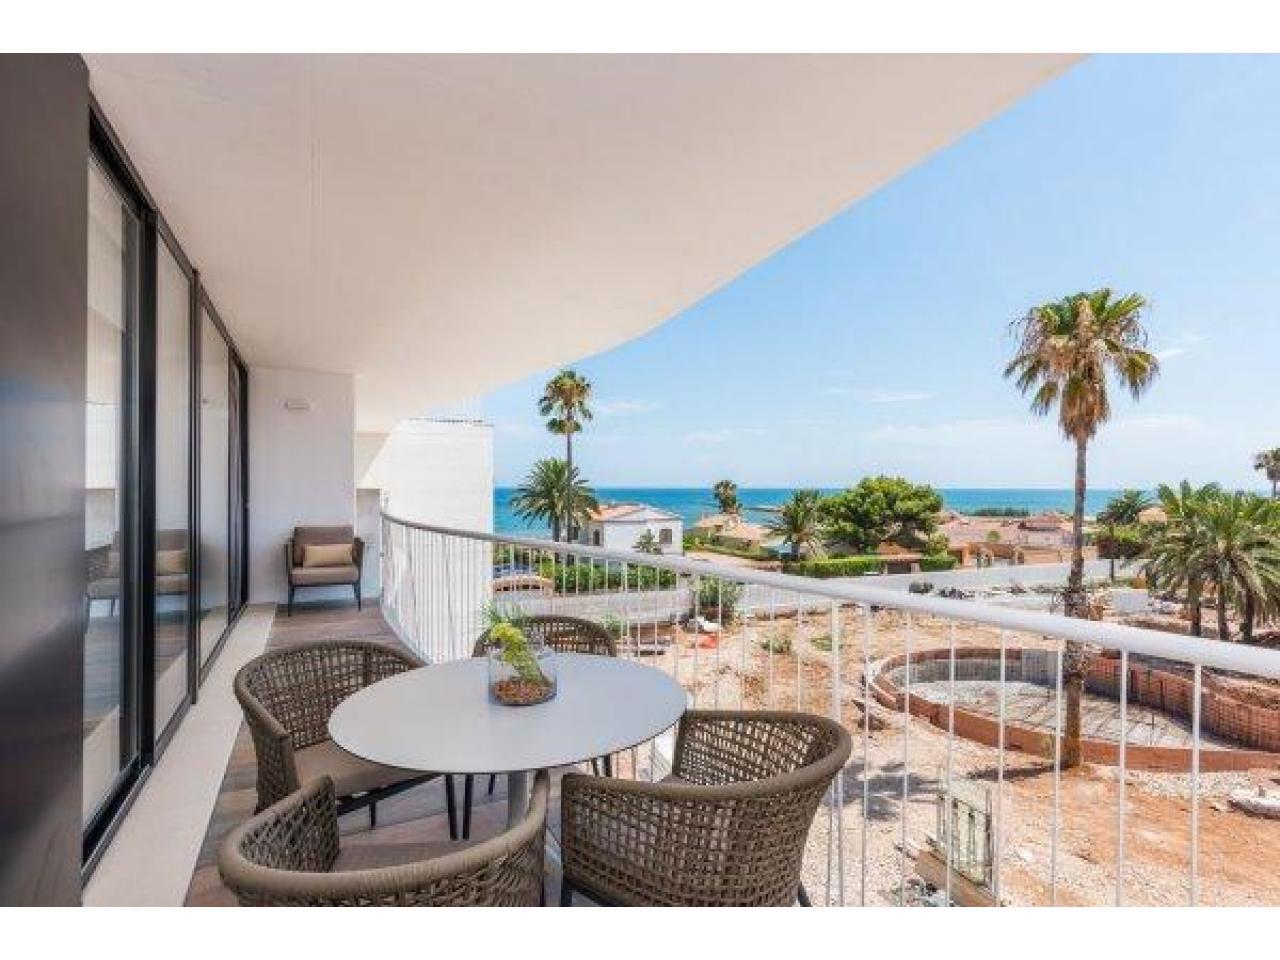 Недвижимость в Испании, Новая квартира от застройщика в видами на море в Дения,Коста Бланка,Испания - 3